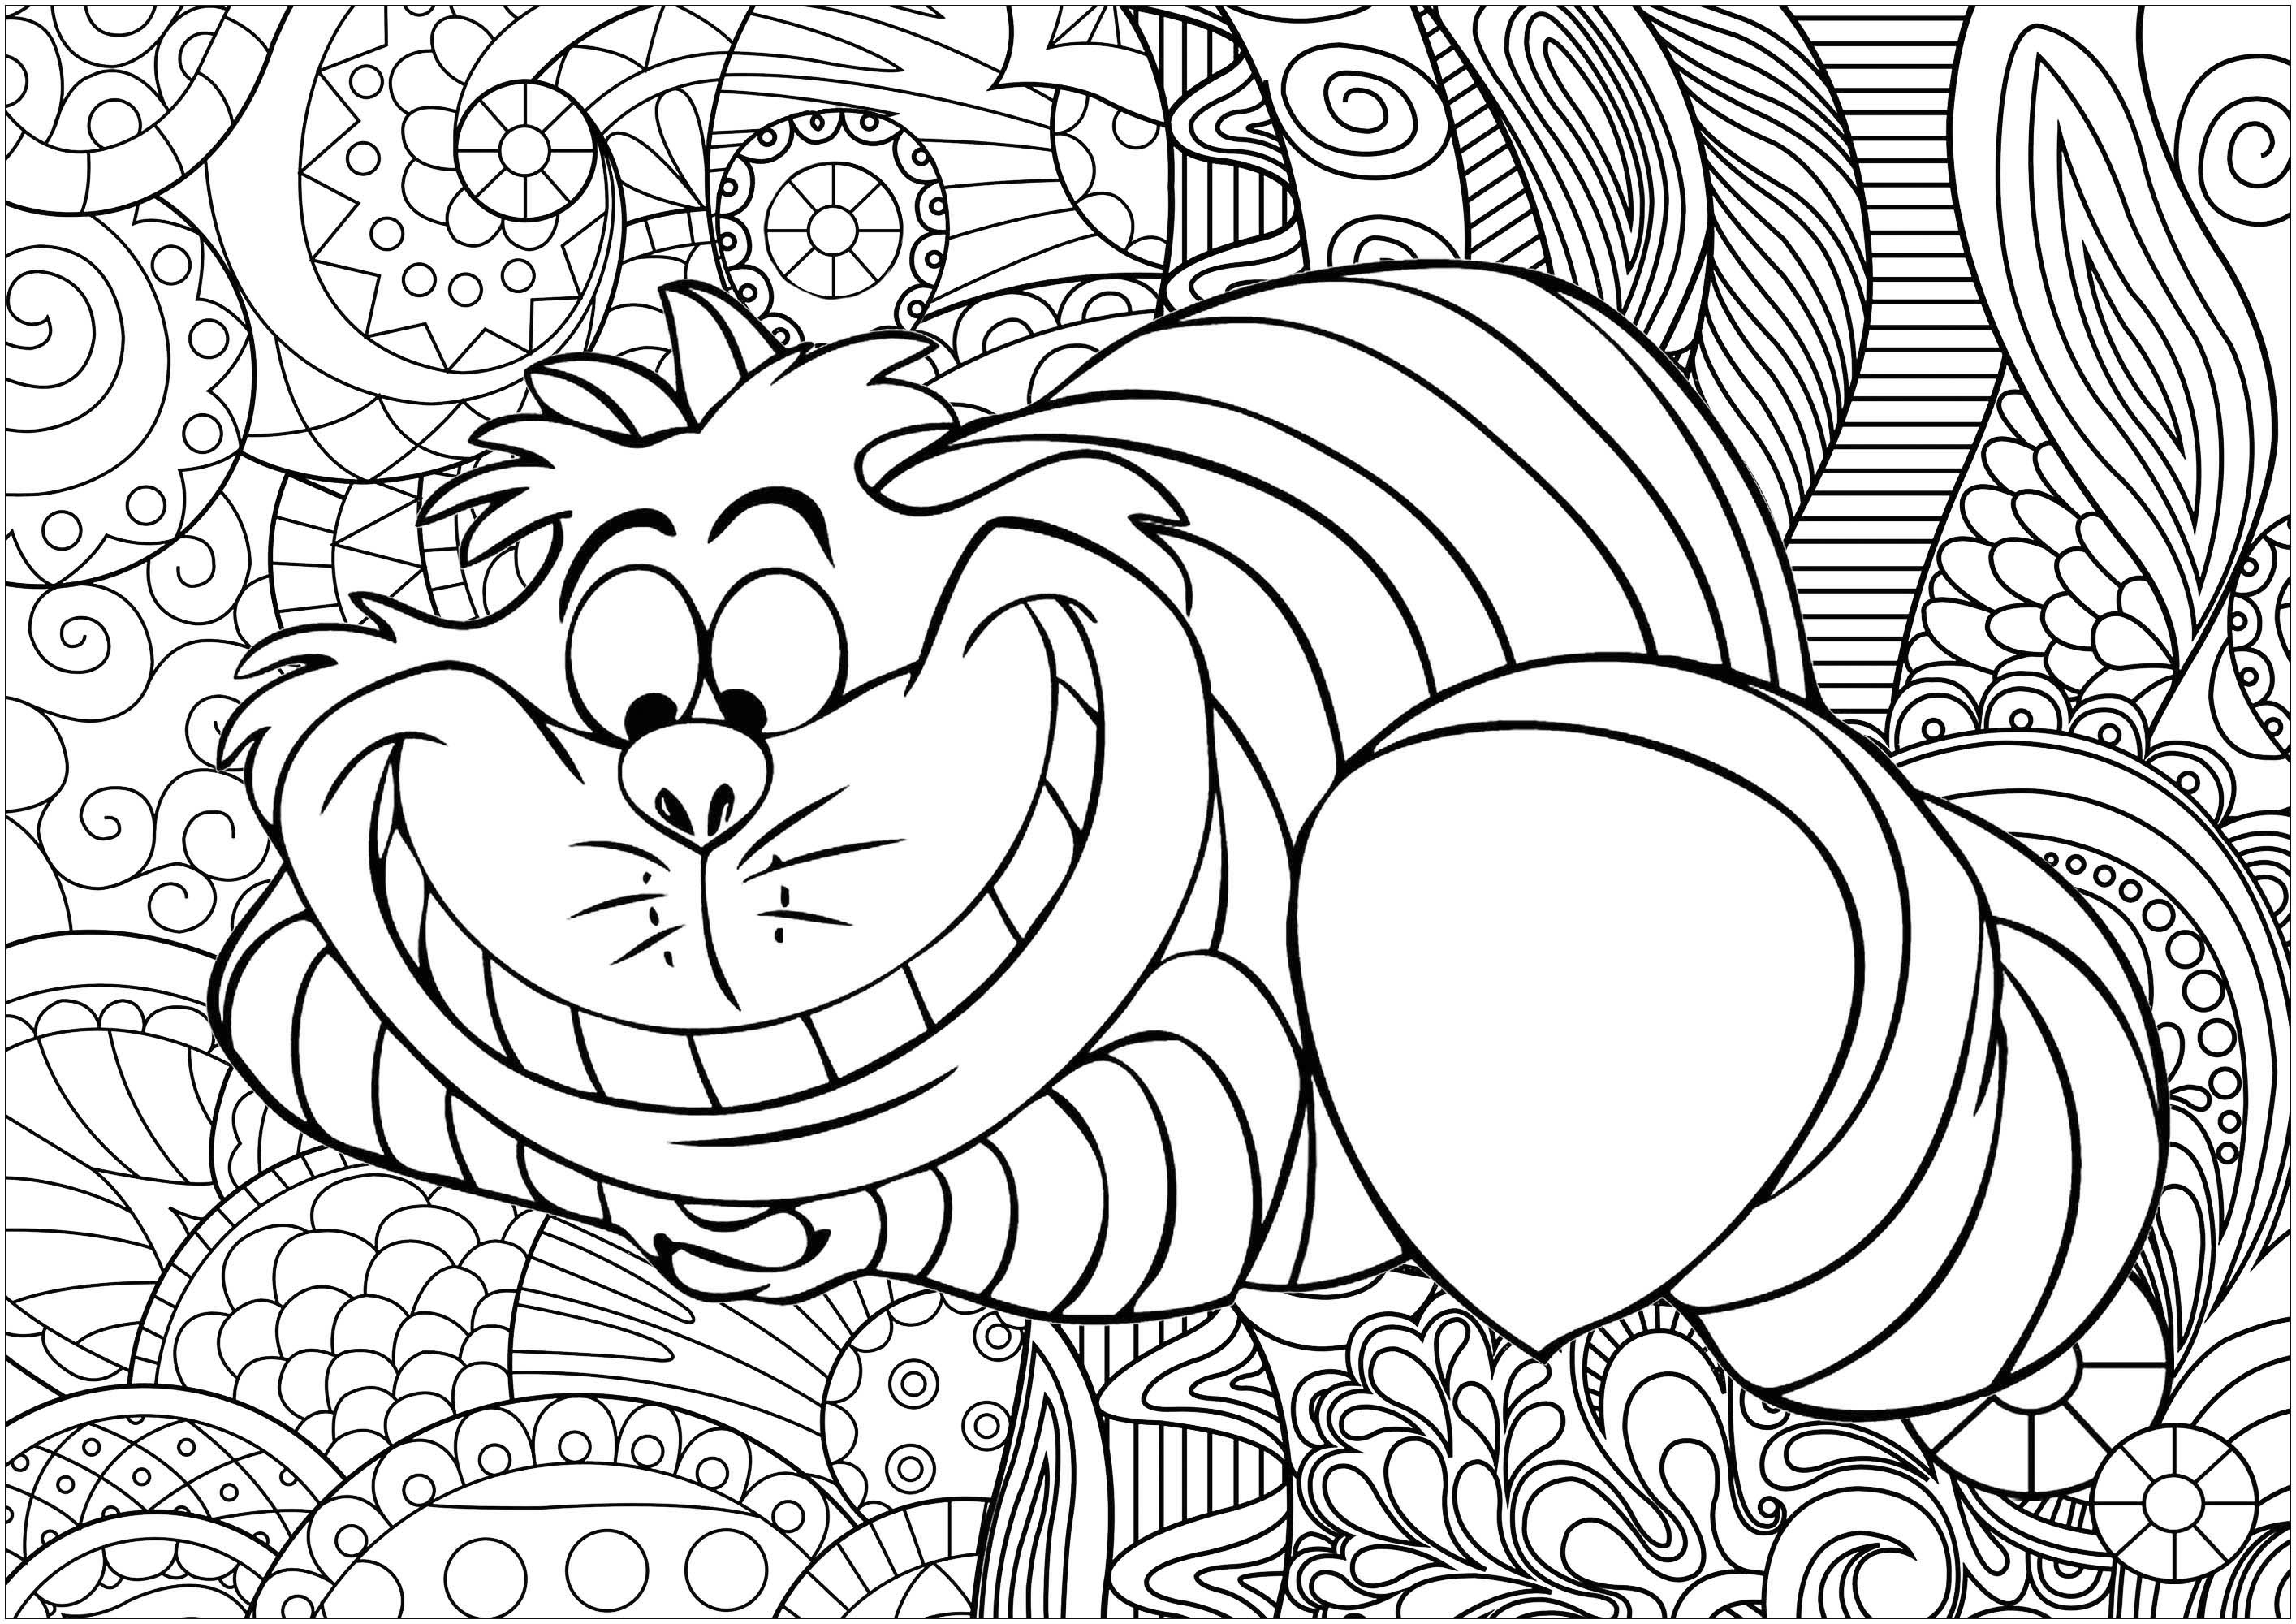 Male die berühmte Grinsekatze aus Alices Abenteuer im Wunderland von Lewis Carroll aus, die durch den Disney-Zeichentrickfilm bekannt wurde. Hintergrund von Caillou, Künstler : Art'Isabelle